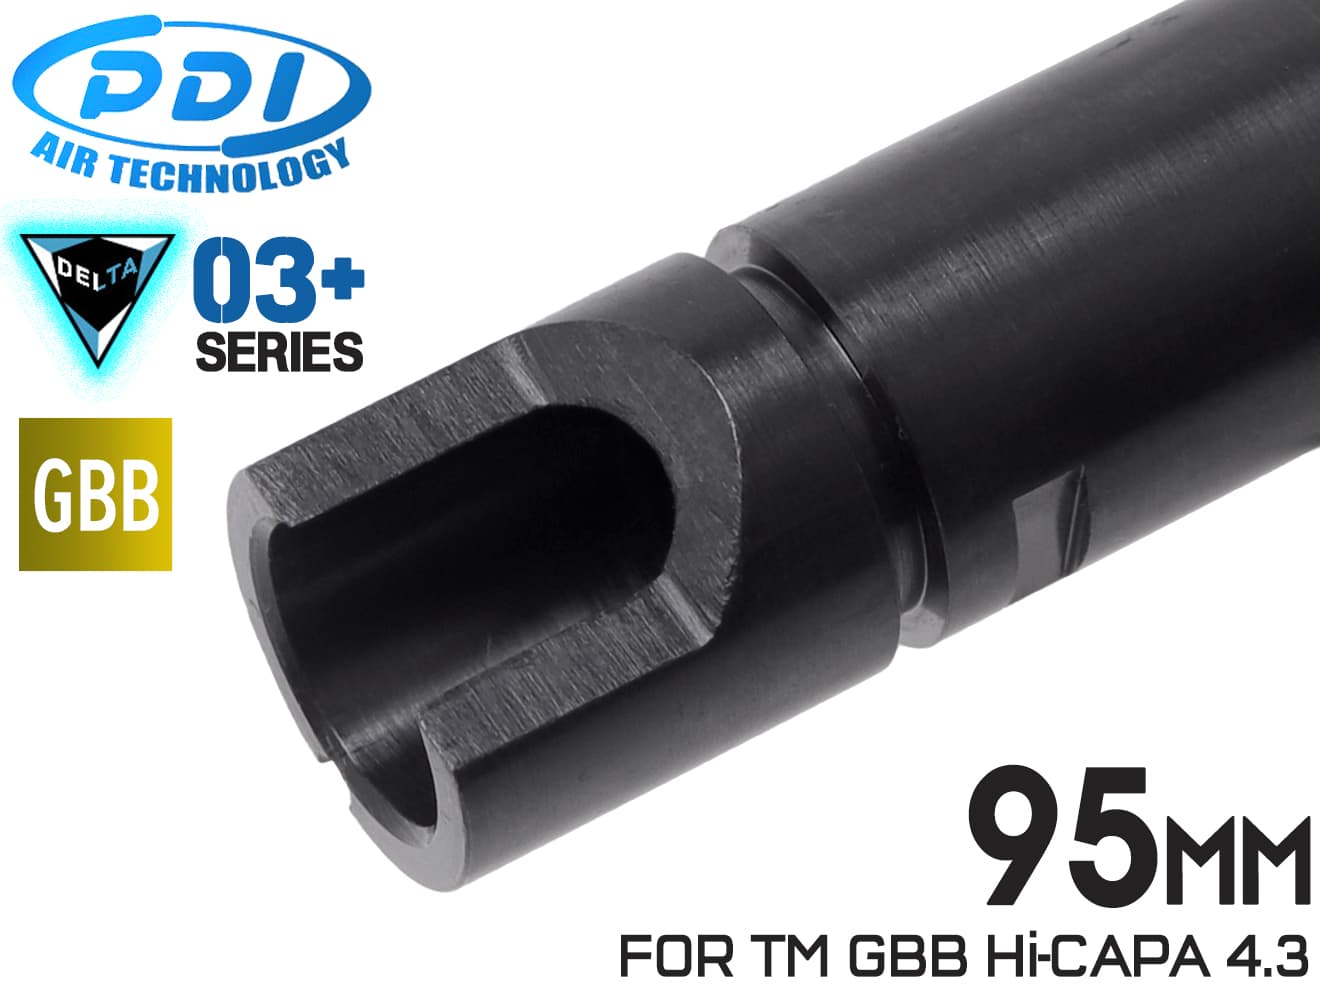 PDI DELTAシリーズ 03+ GBB 精密インナーバレル(6.03±0.007) 95mm マルイ HI-CAPA4.3◆MARUI TM ガスブロ ガスブローバック バランス 初速 集弾性 内部 強化